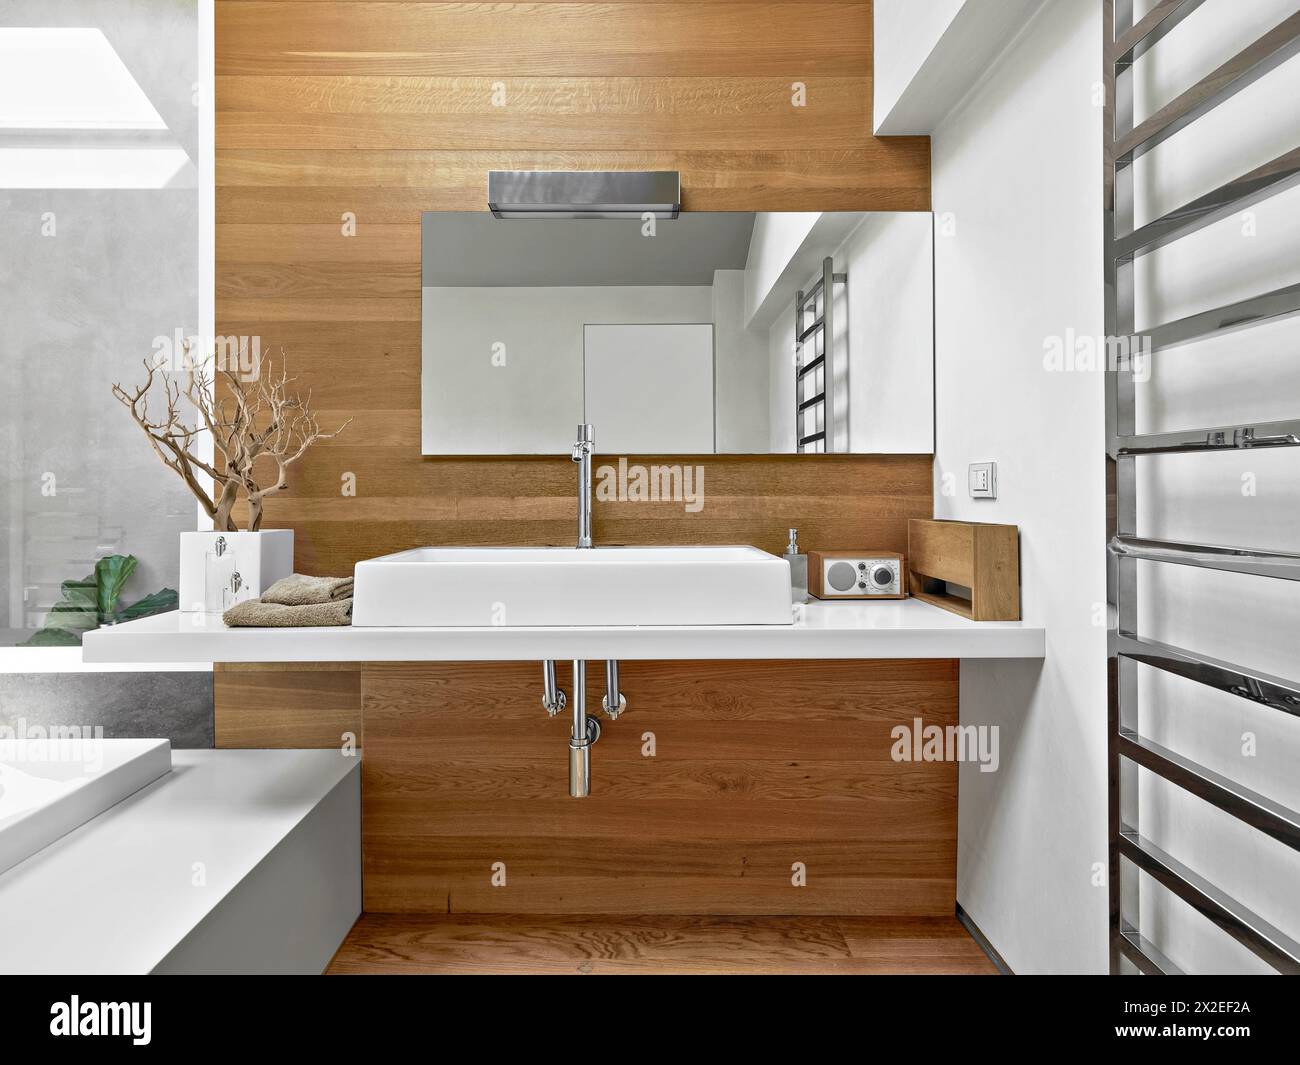 Innenaufnahmen eines modernen Badezimmers mit Waschtisch auf der Oberseite und Waskottchen Stockfoto